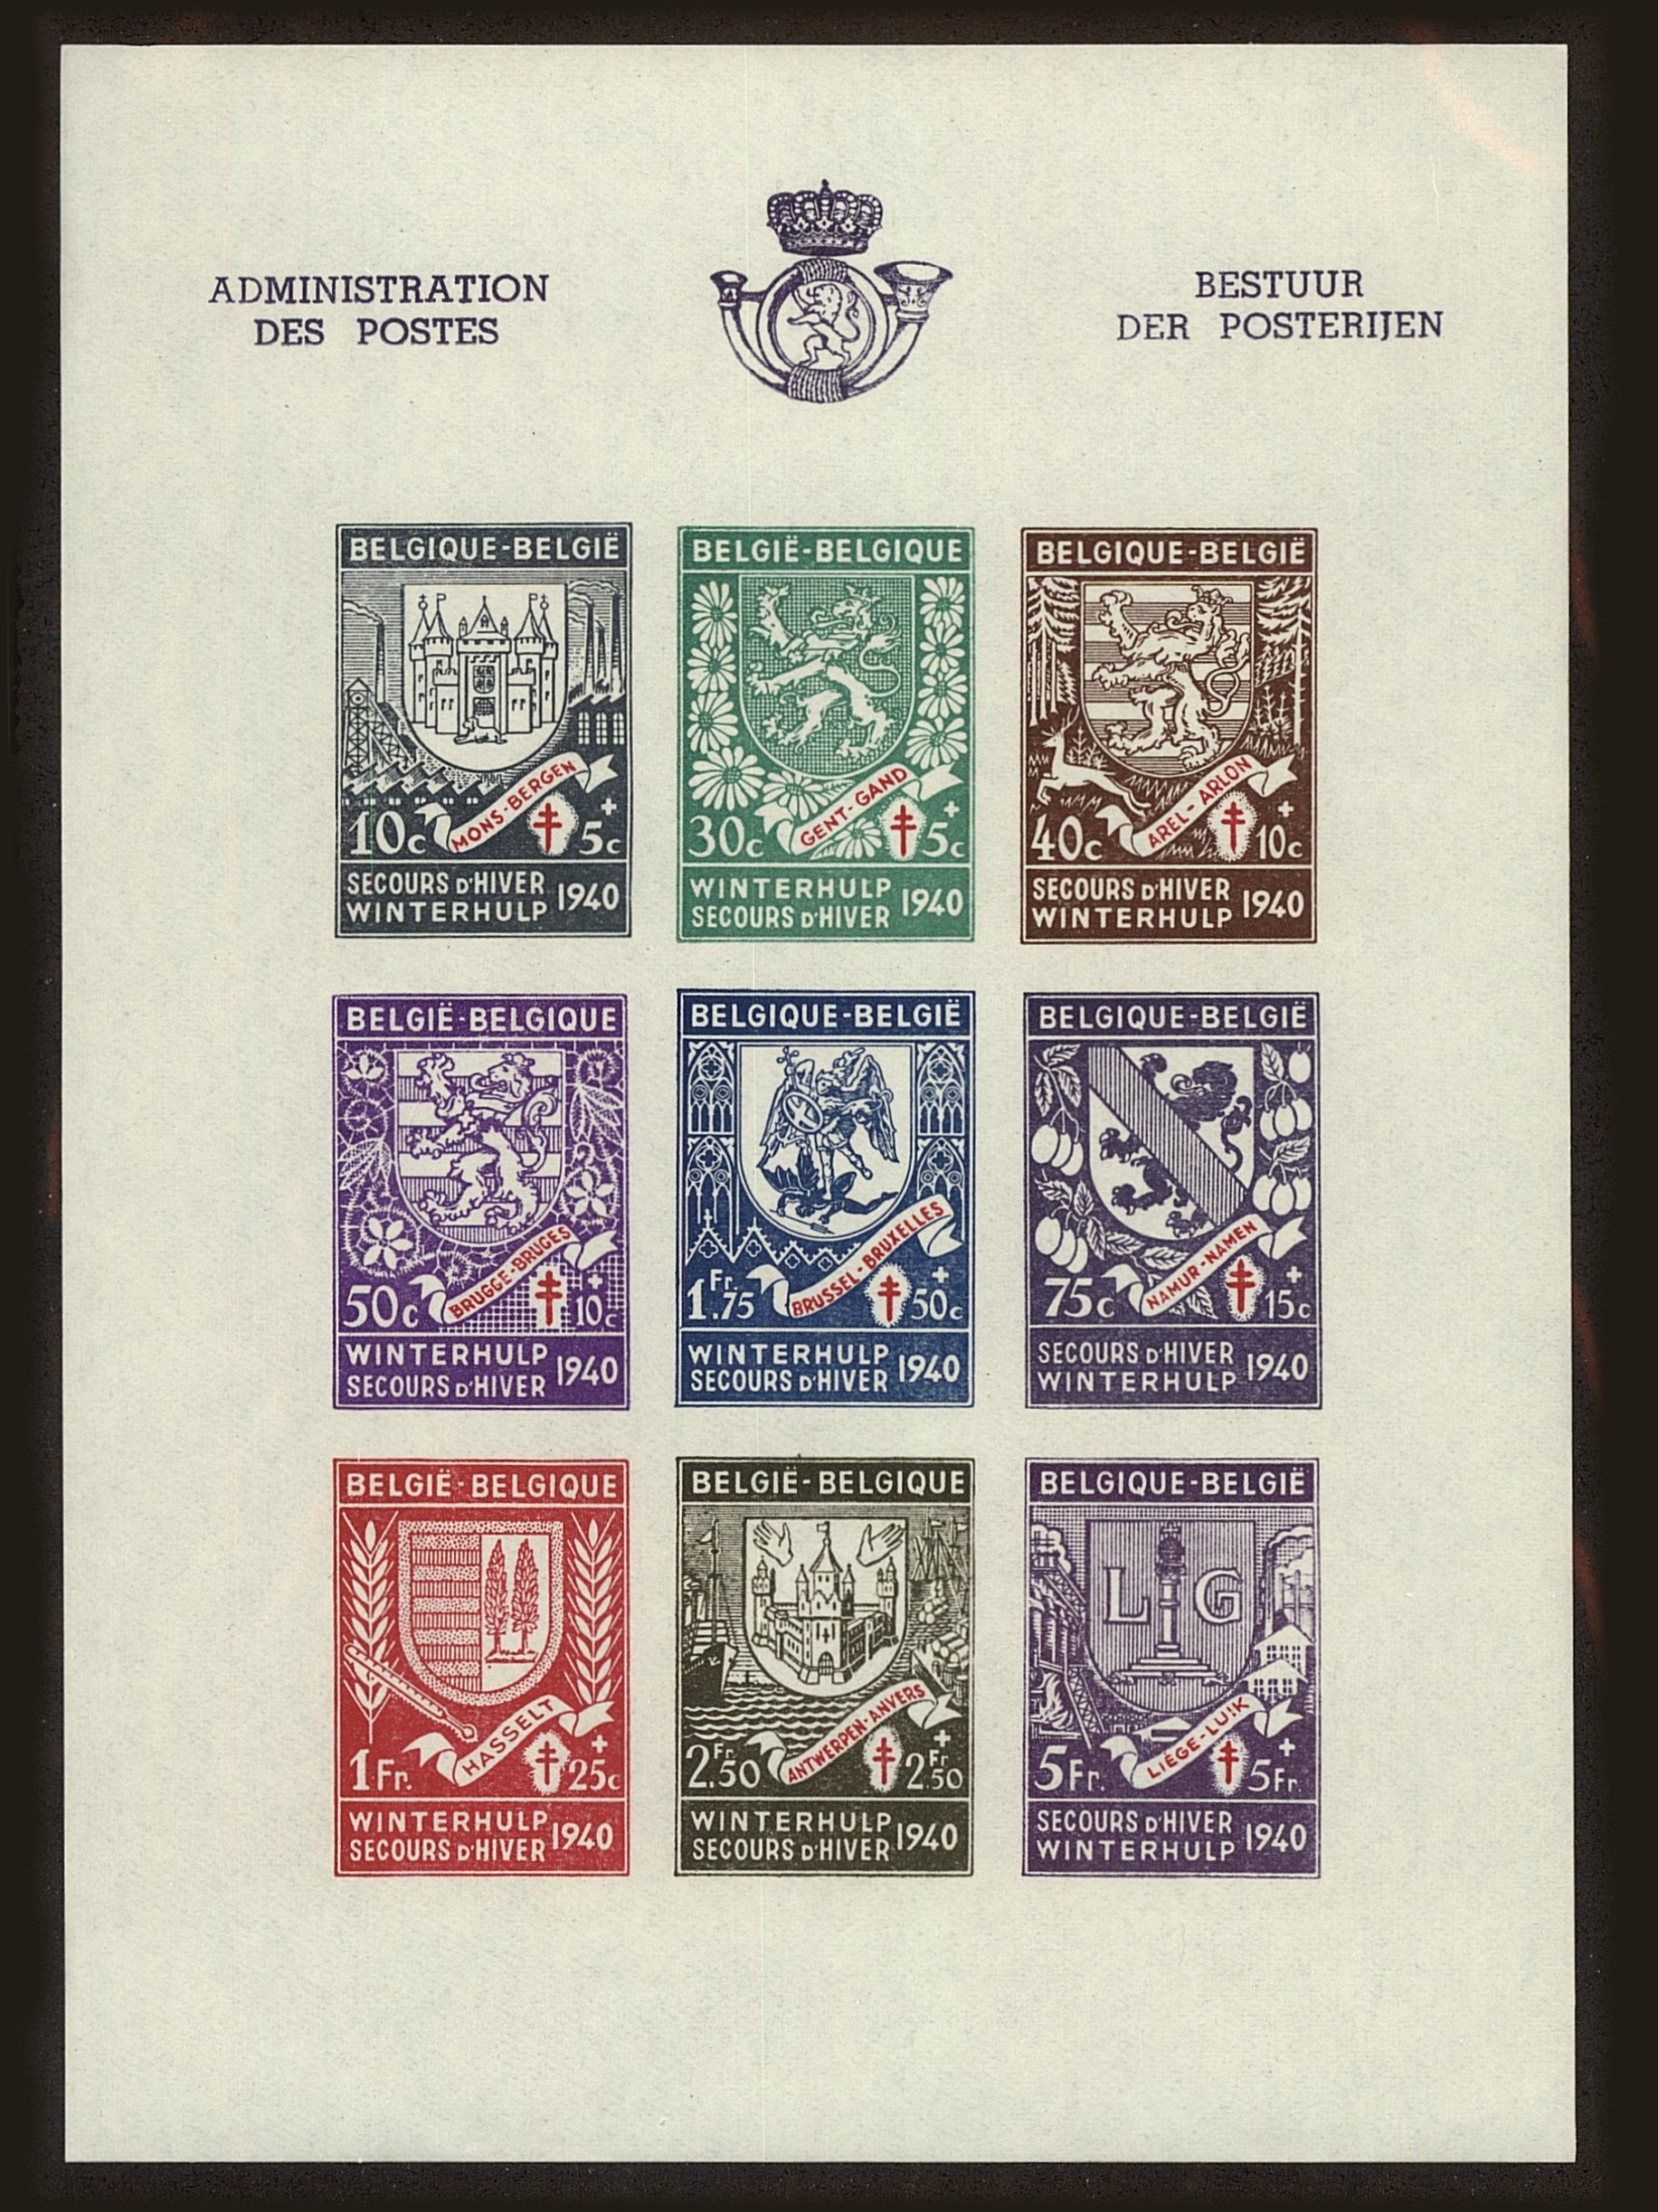 Front view of Belgium B279 collectors stamp